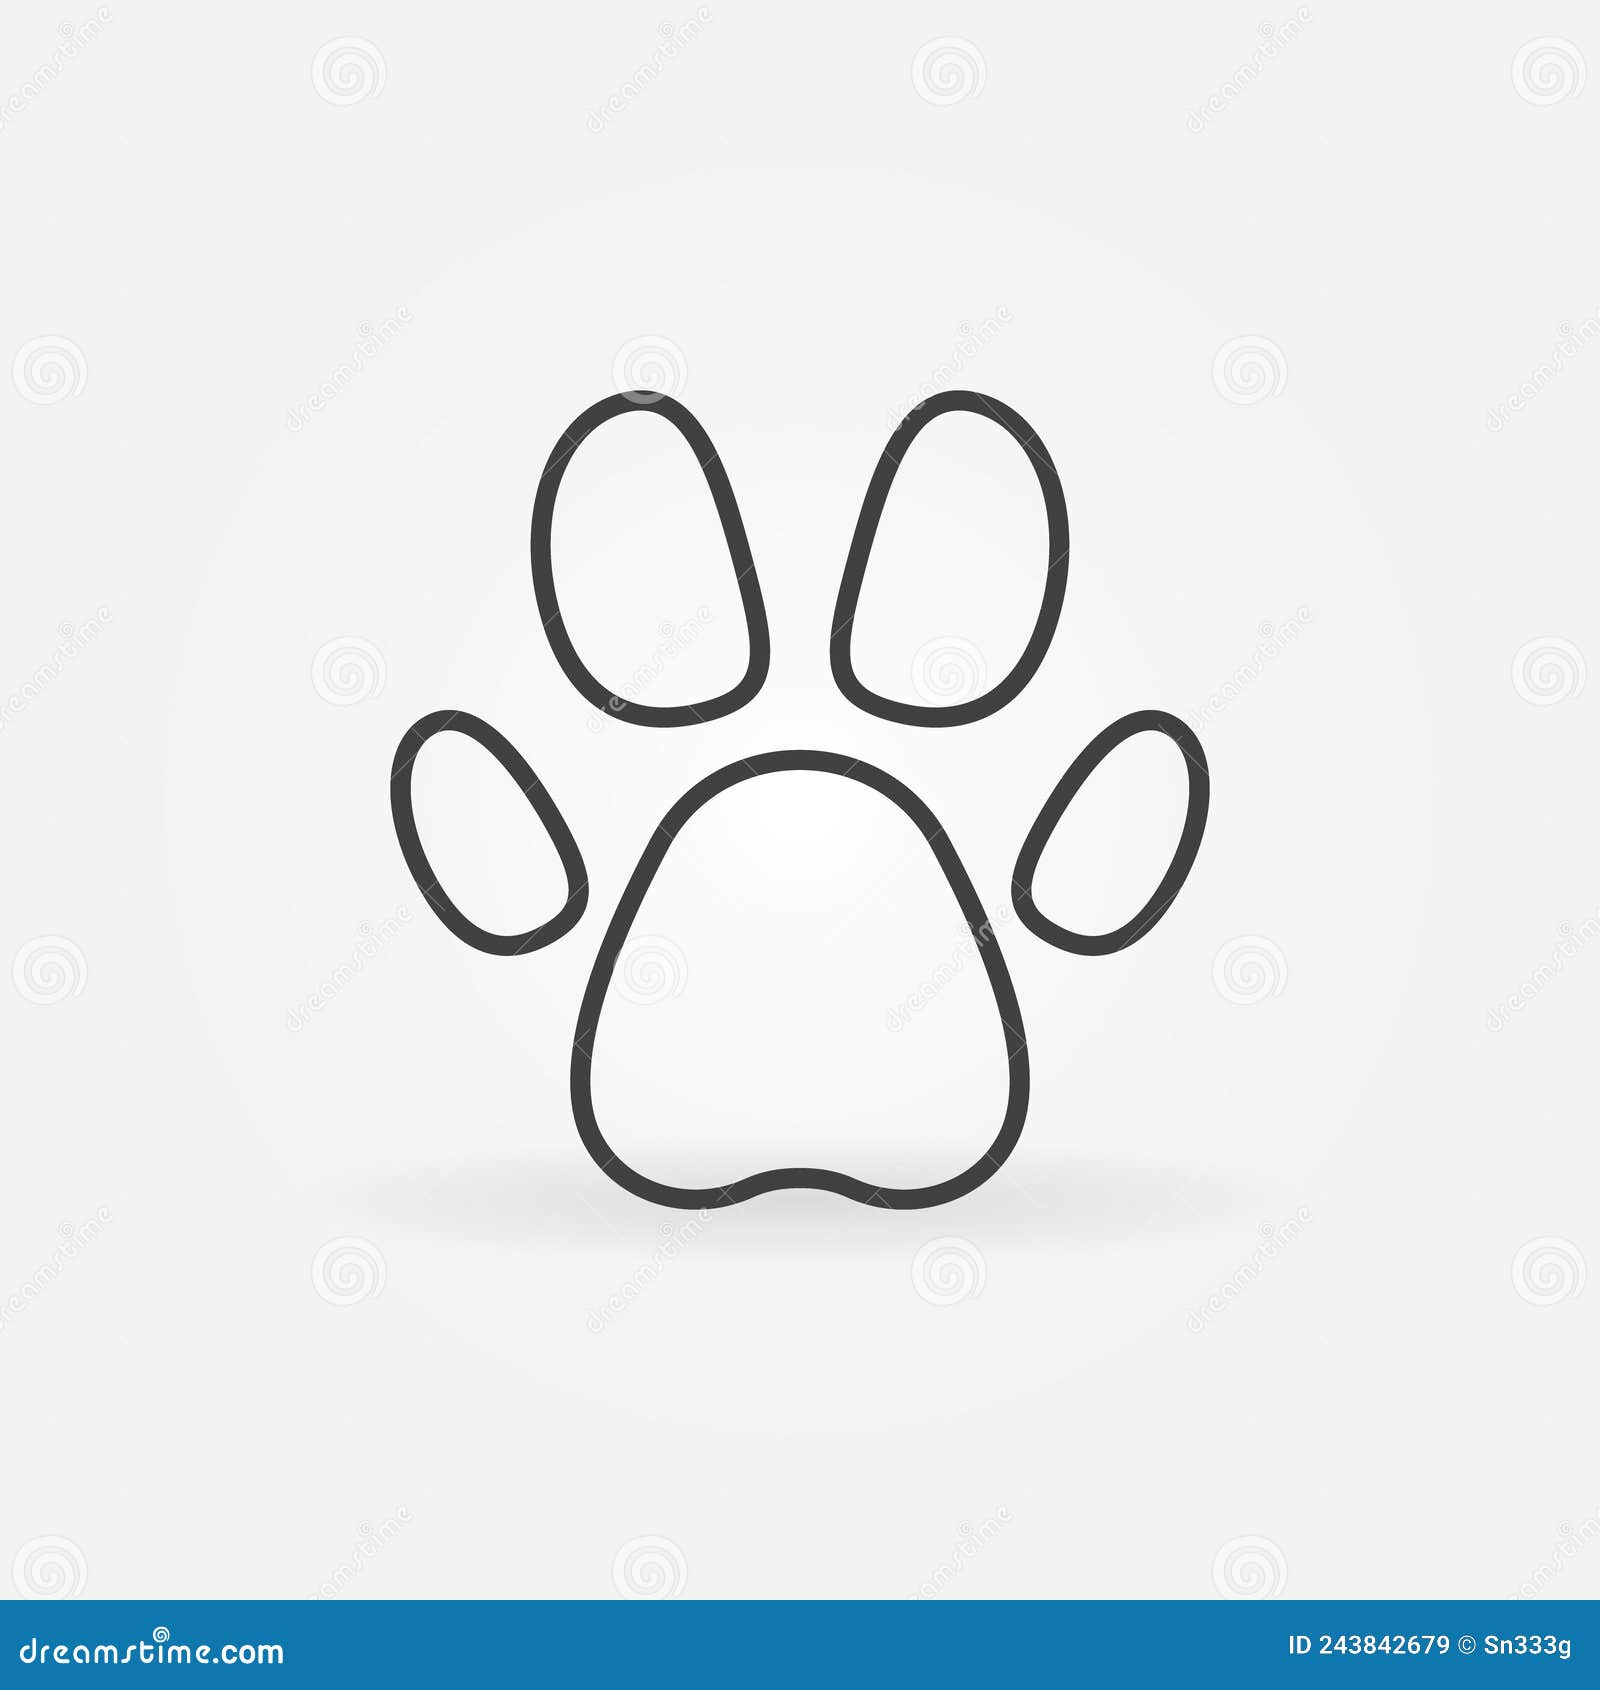 Symbole De Patte D'animal Familier Forme Simple D'empreinte De Pas